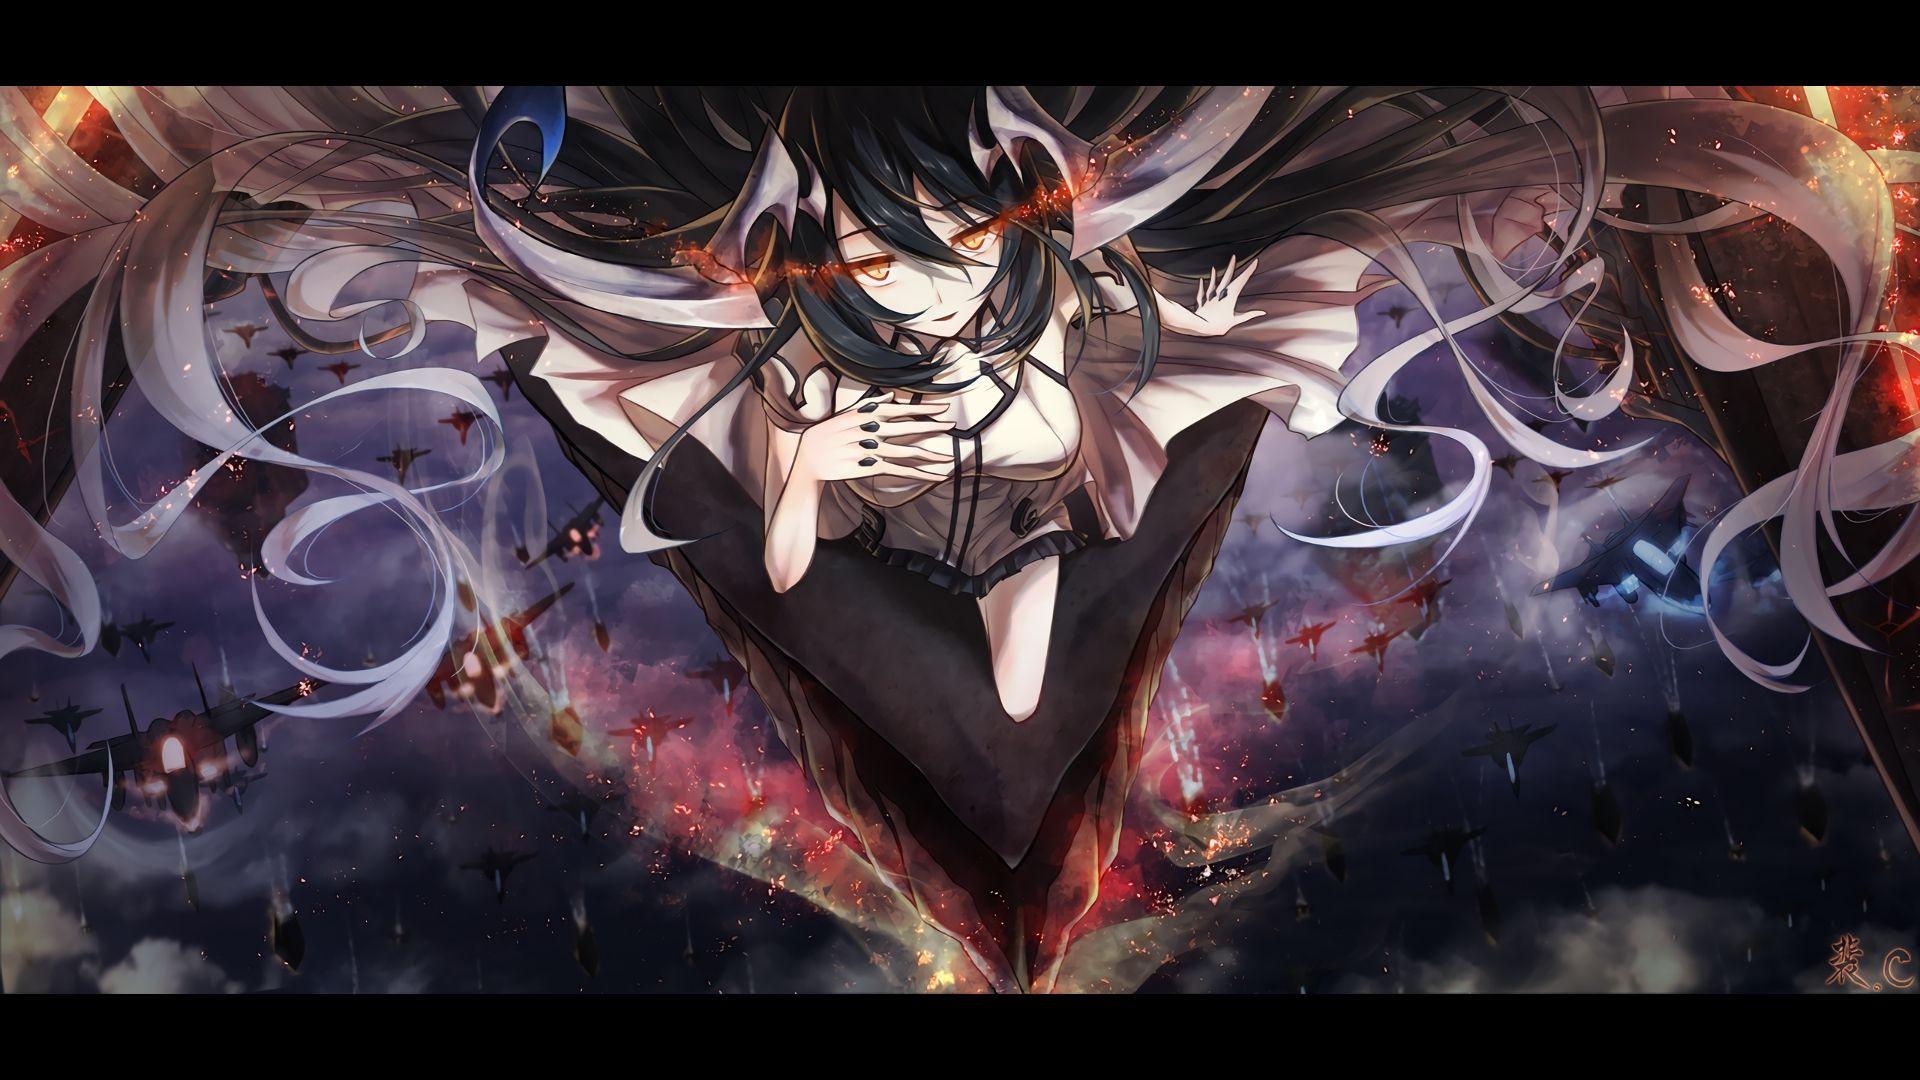 Anime Demon Girl Wallpapers Top Free Anime Demon Girl